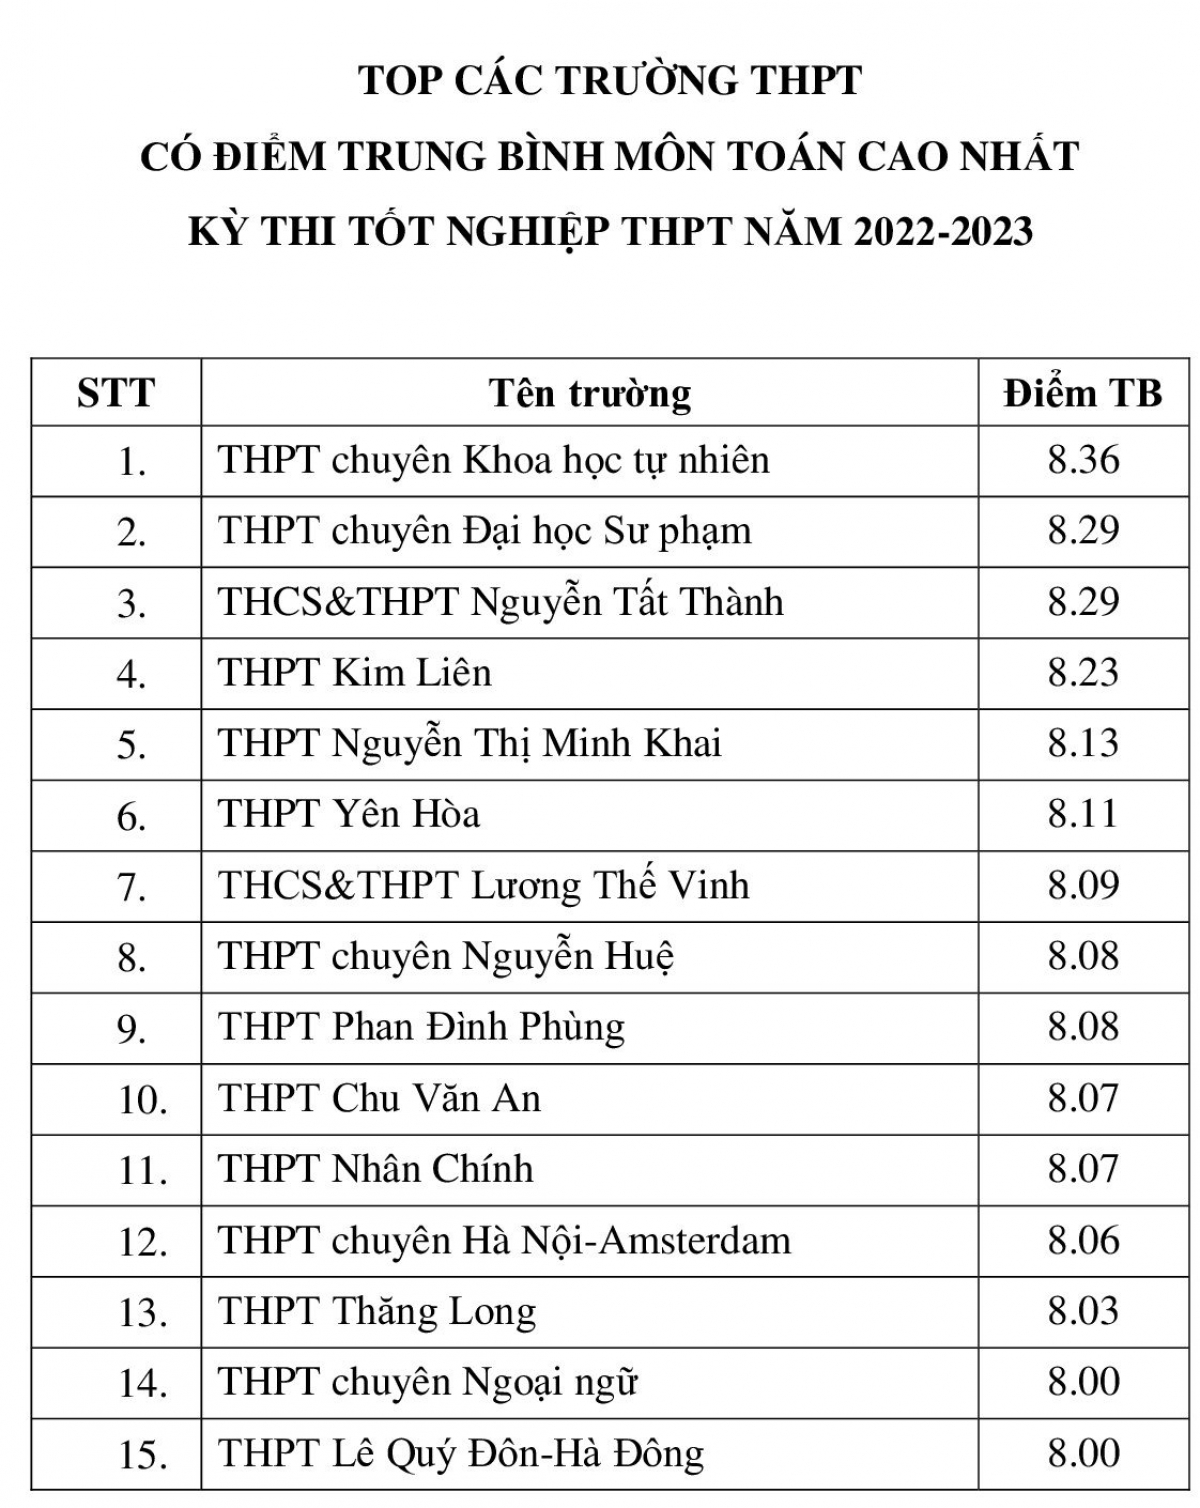 Bảng thống kê những trường THPT có điểm trung bình môn Toán cao nhất thành phố Hà Nội